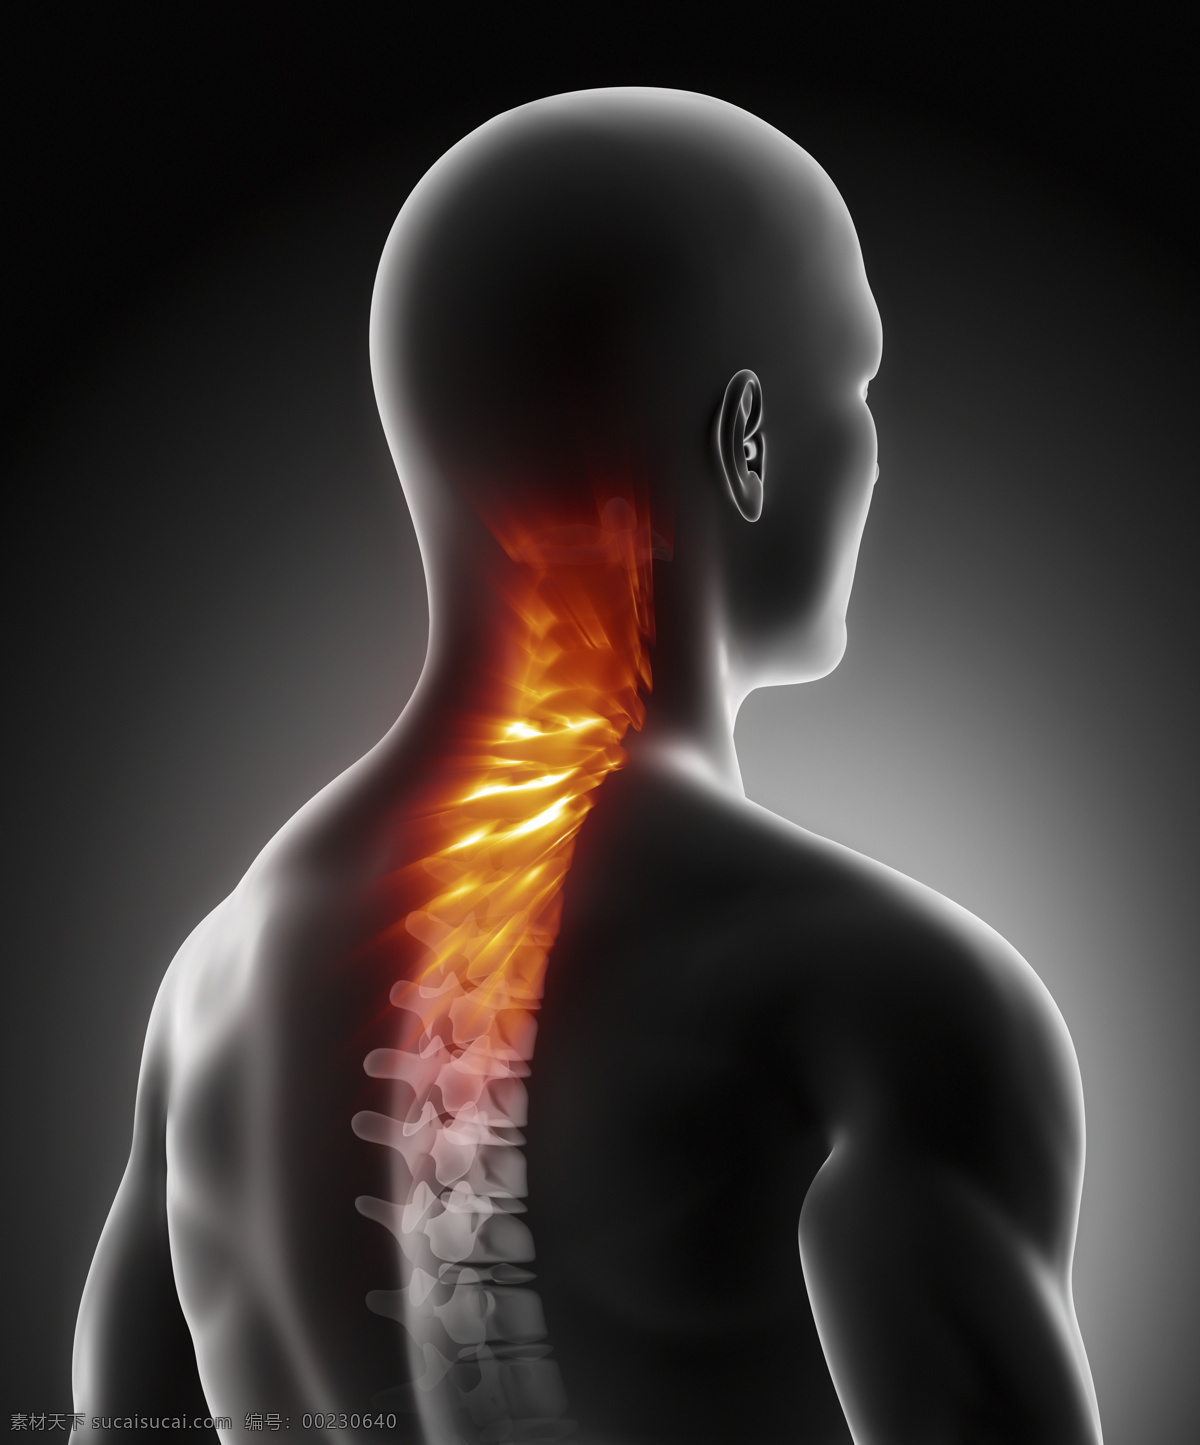 男性 脊椎 骨骼 男性人体器官 脊髓 人体器官 医疗科学 医学 人体器官图 人物图片